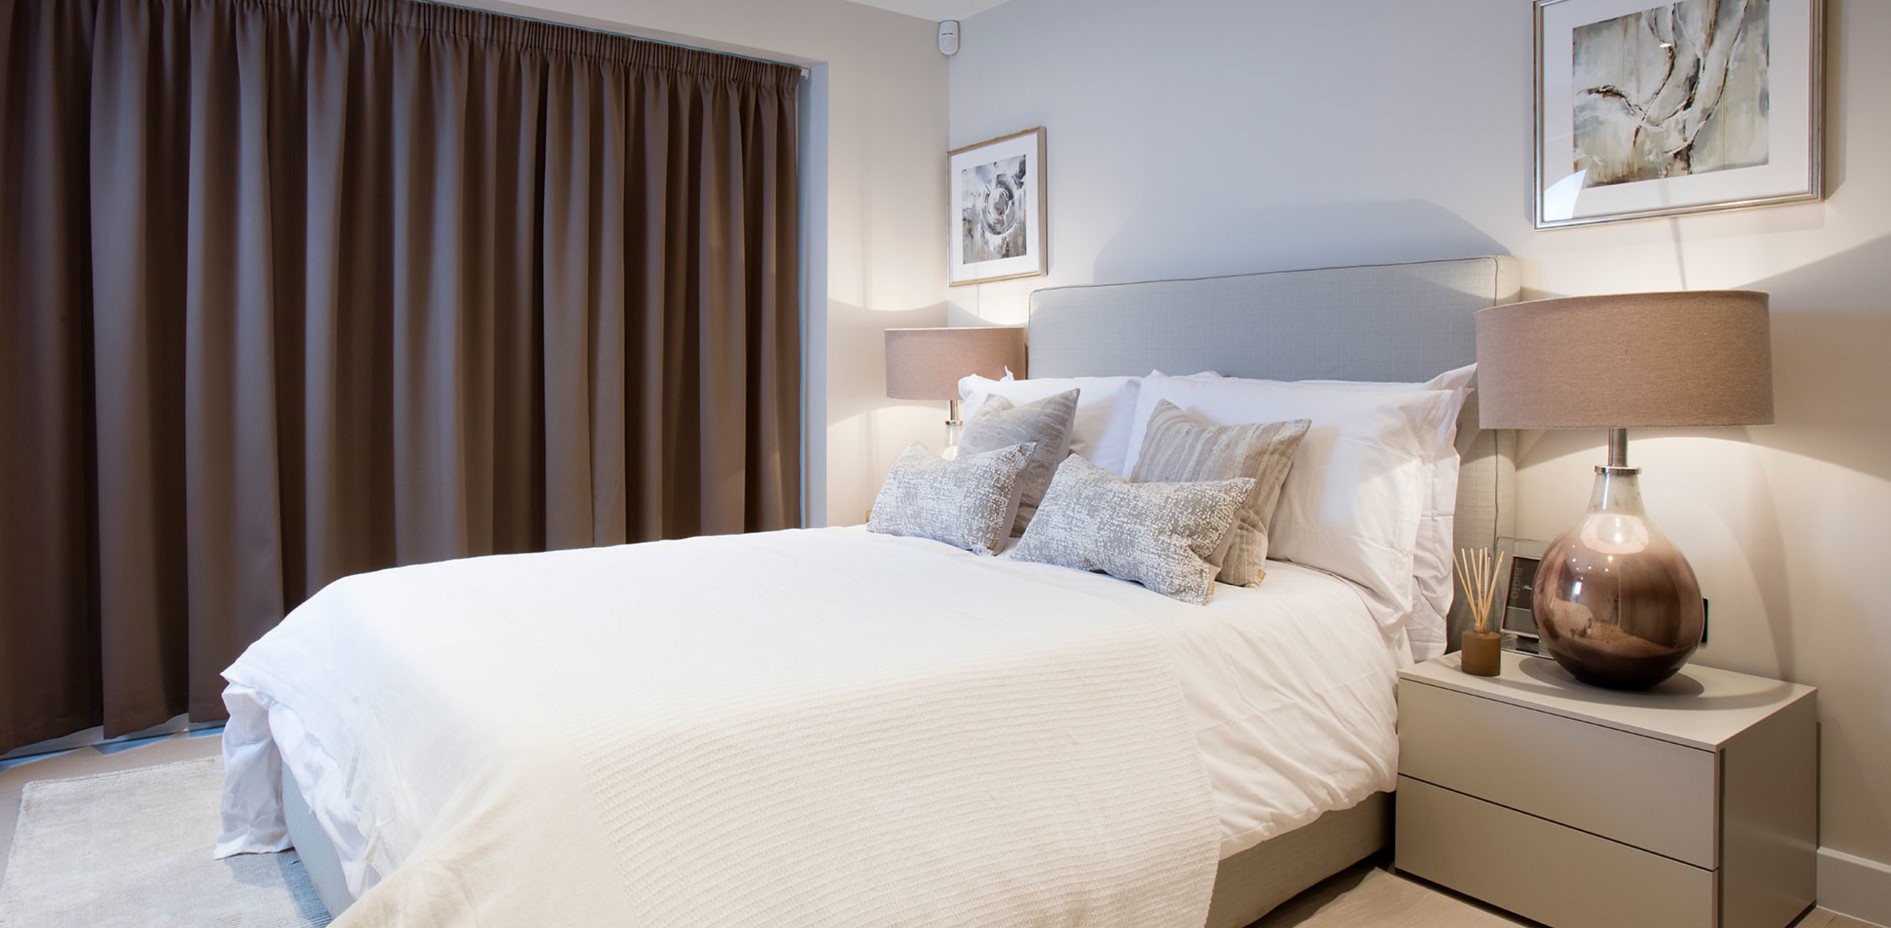 С помощью коричневых штор можно выделить зону спальни в большой комнате